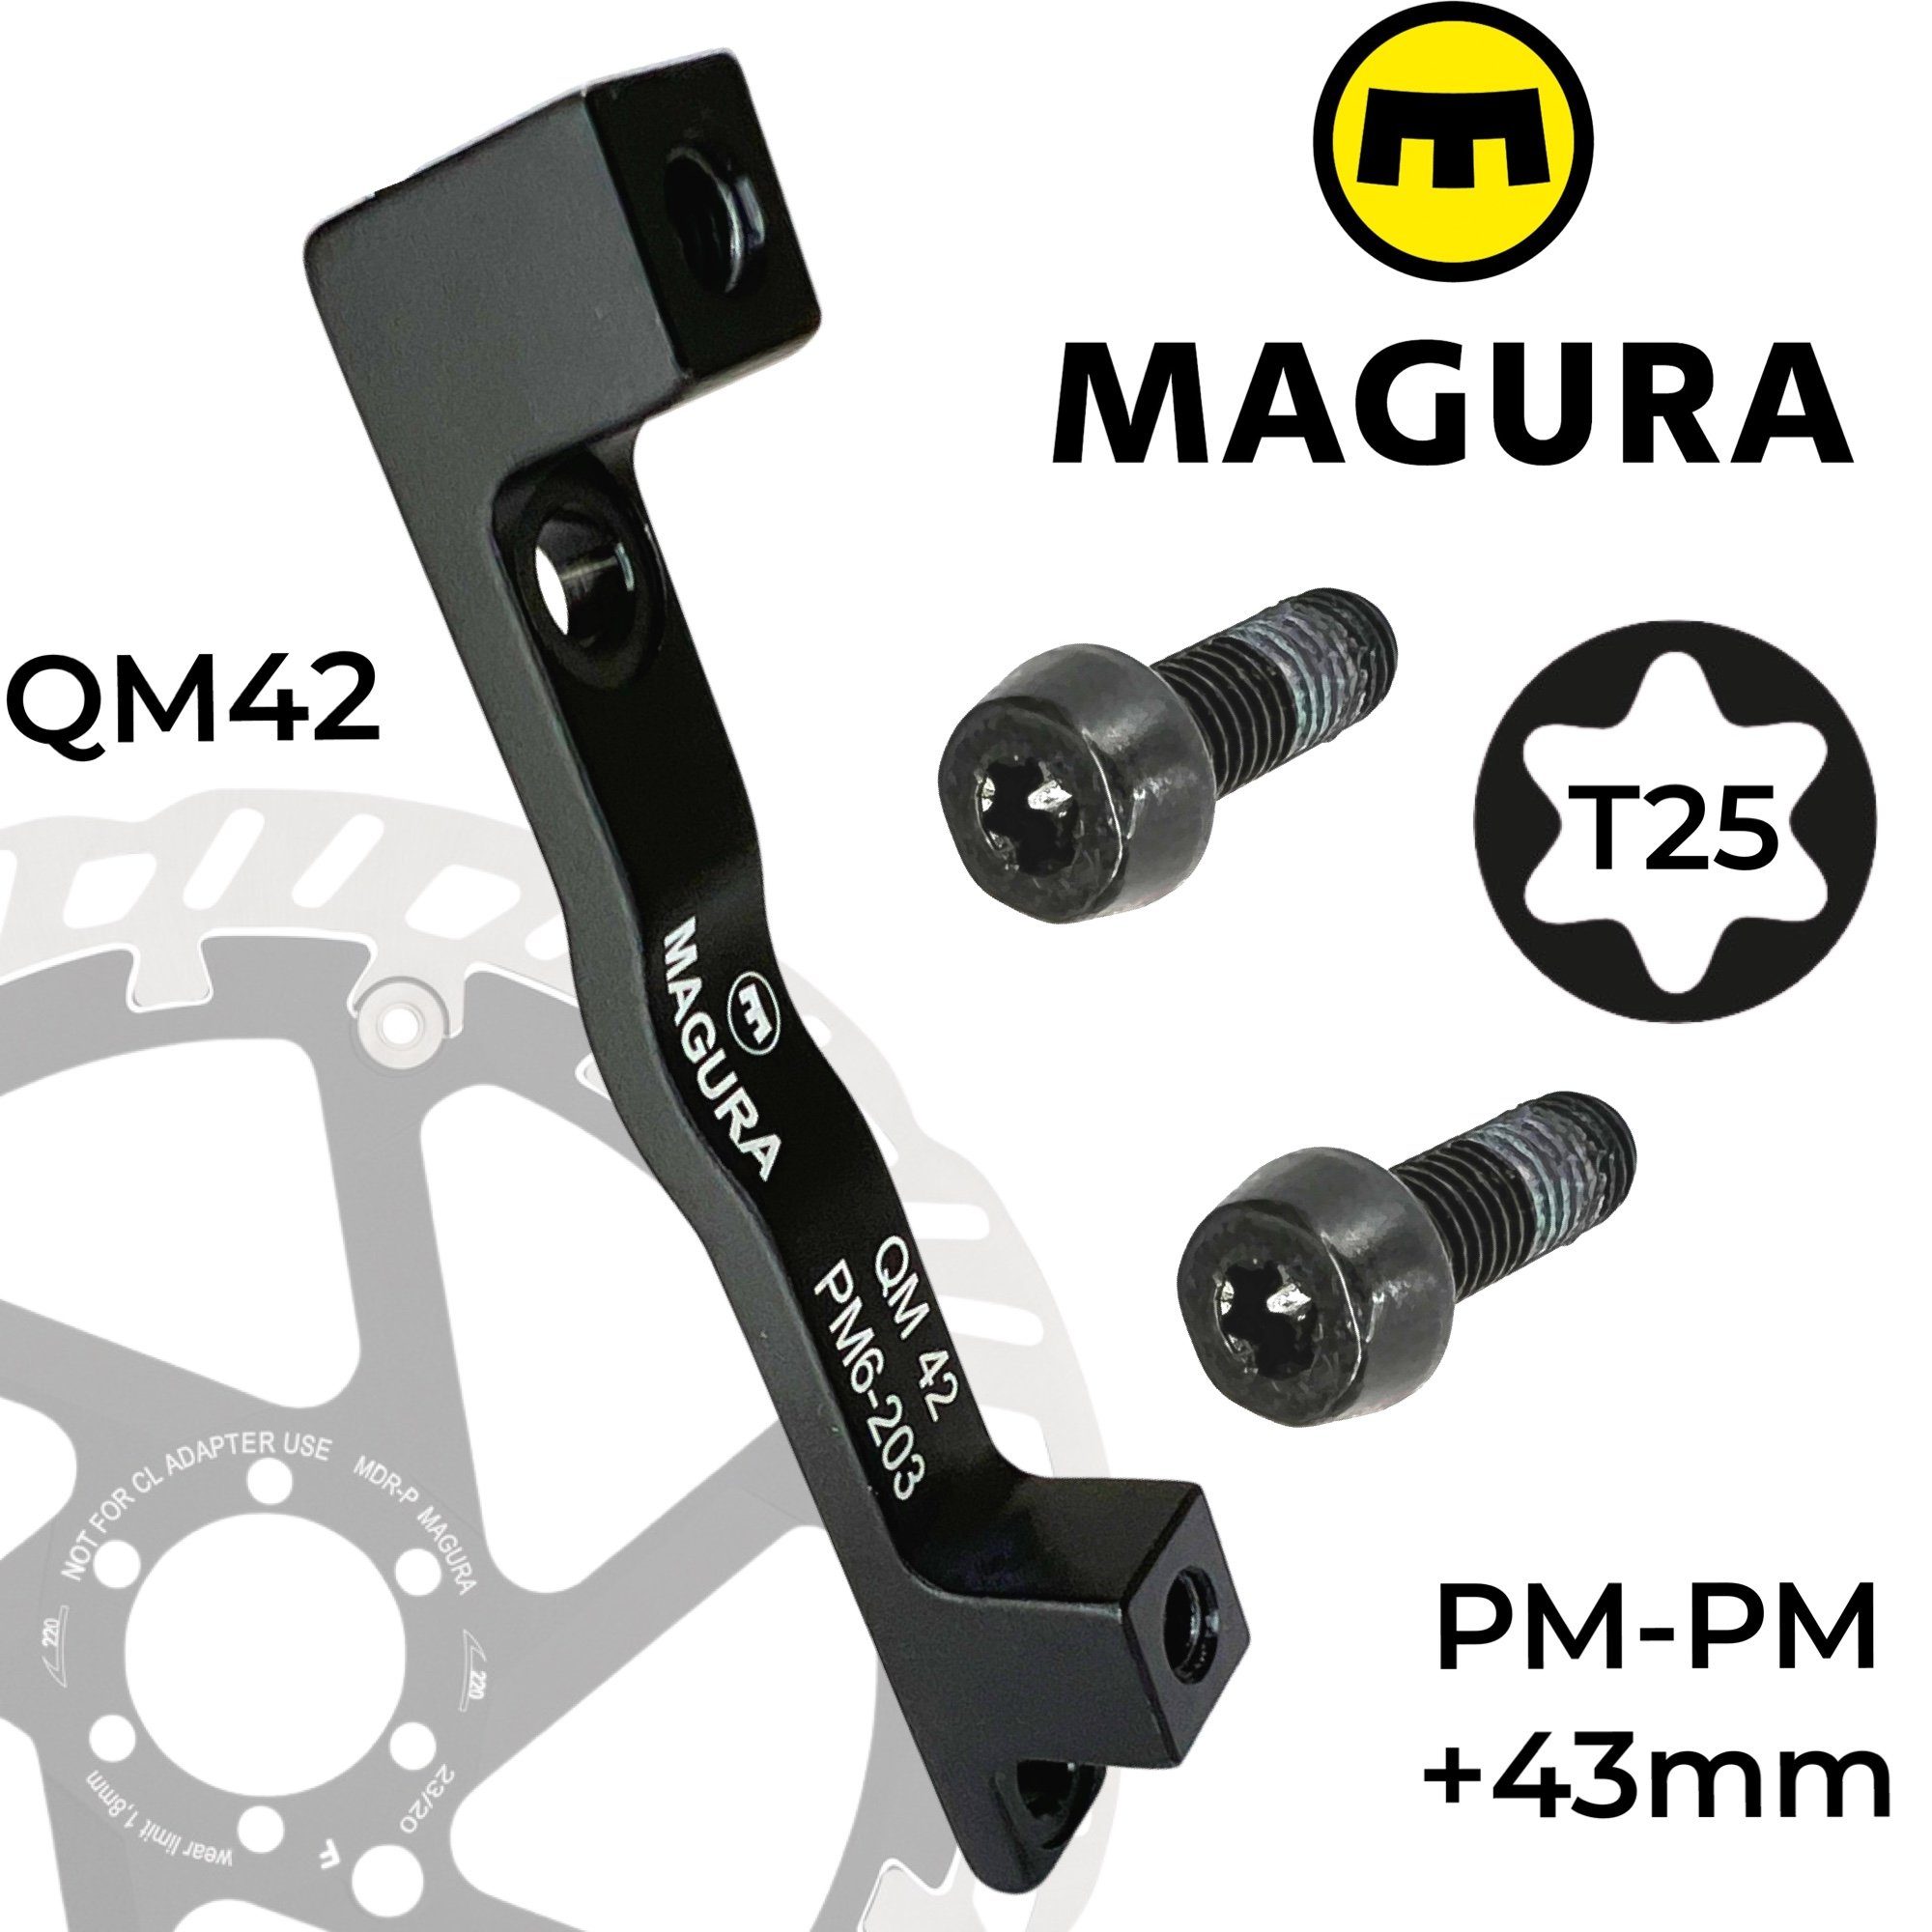 Magura Scheibenbremse Adapter Bremsscheiben PM Magura +43mm QM42 160-203